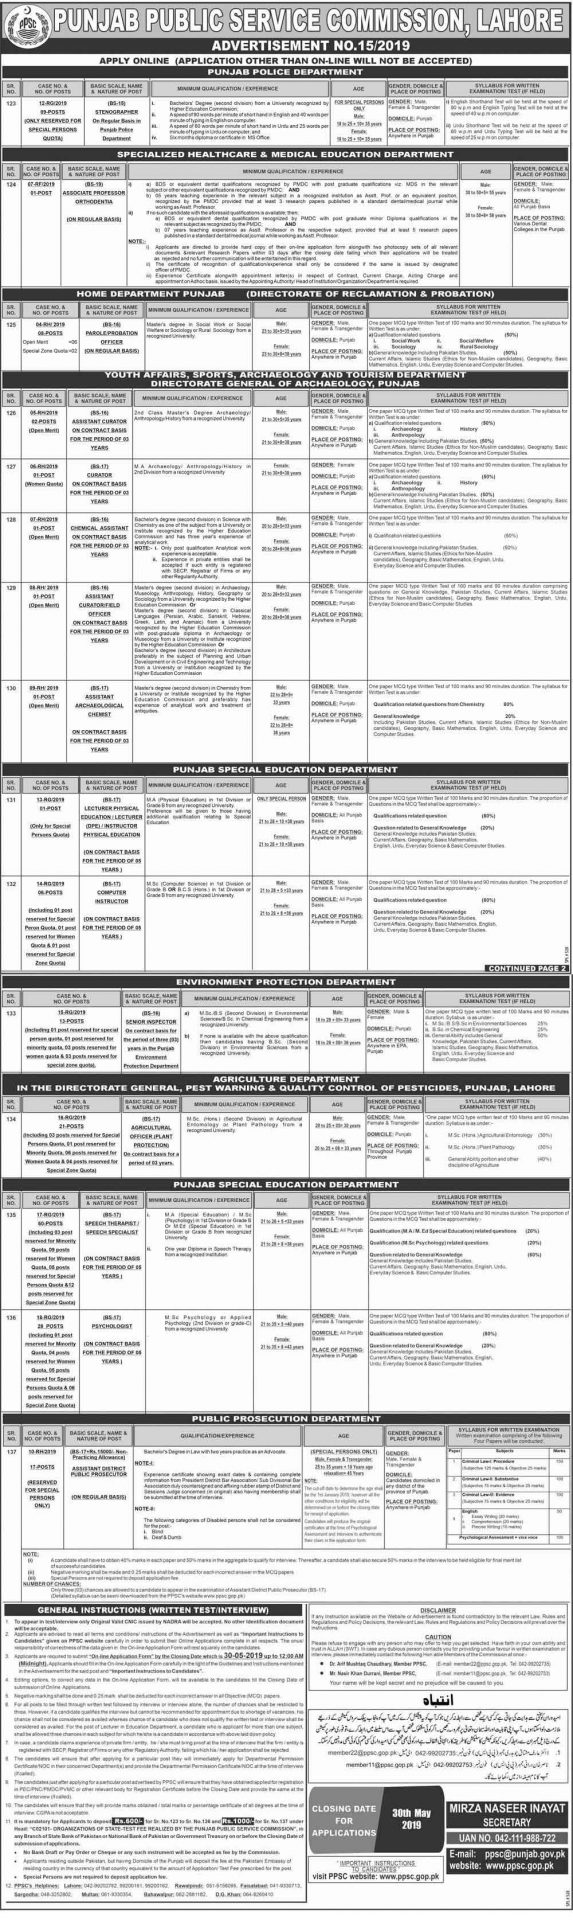 Punjab Public Service Commission PPSC Jobs 2019